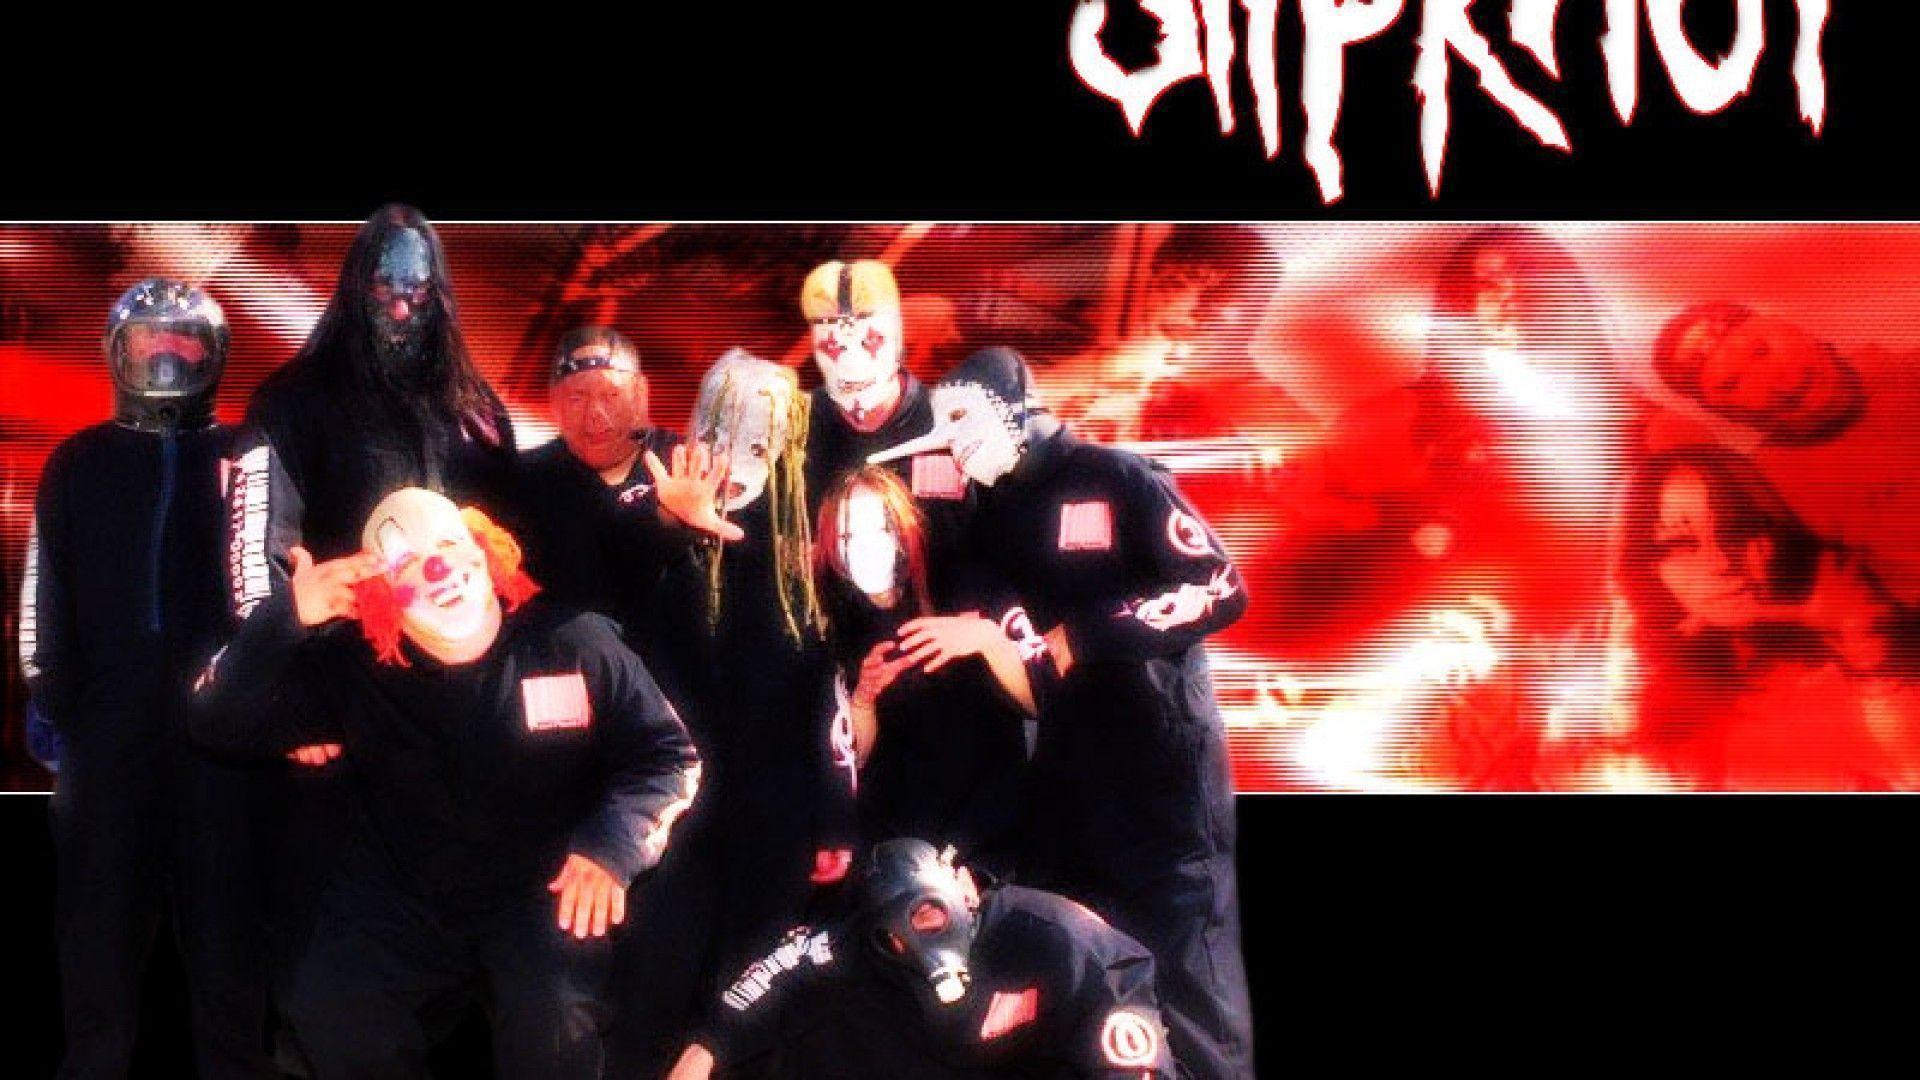 Slipknot Wallpaper 1920x1080PX Slipknot 1080p Wallpaper Red